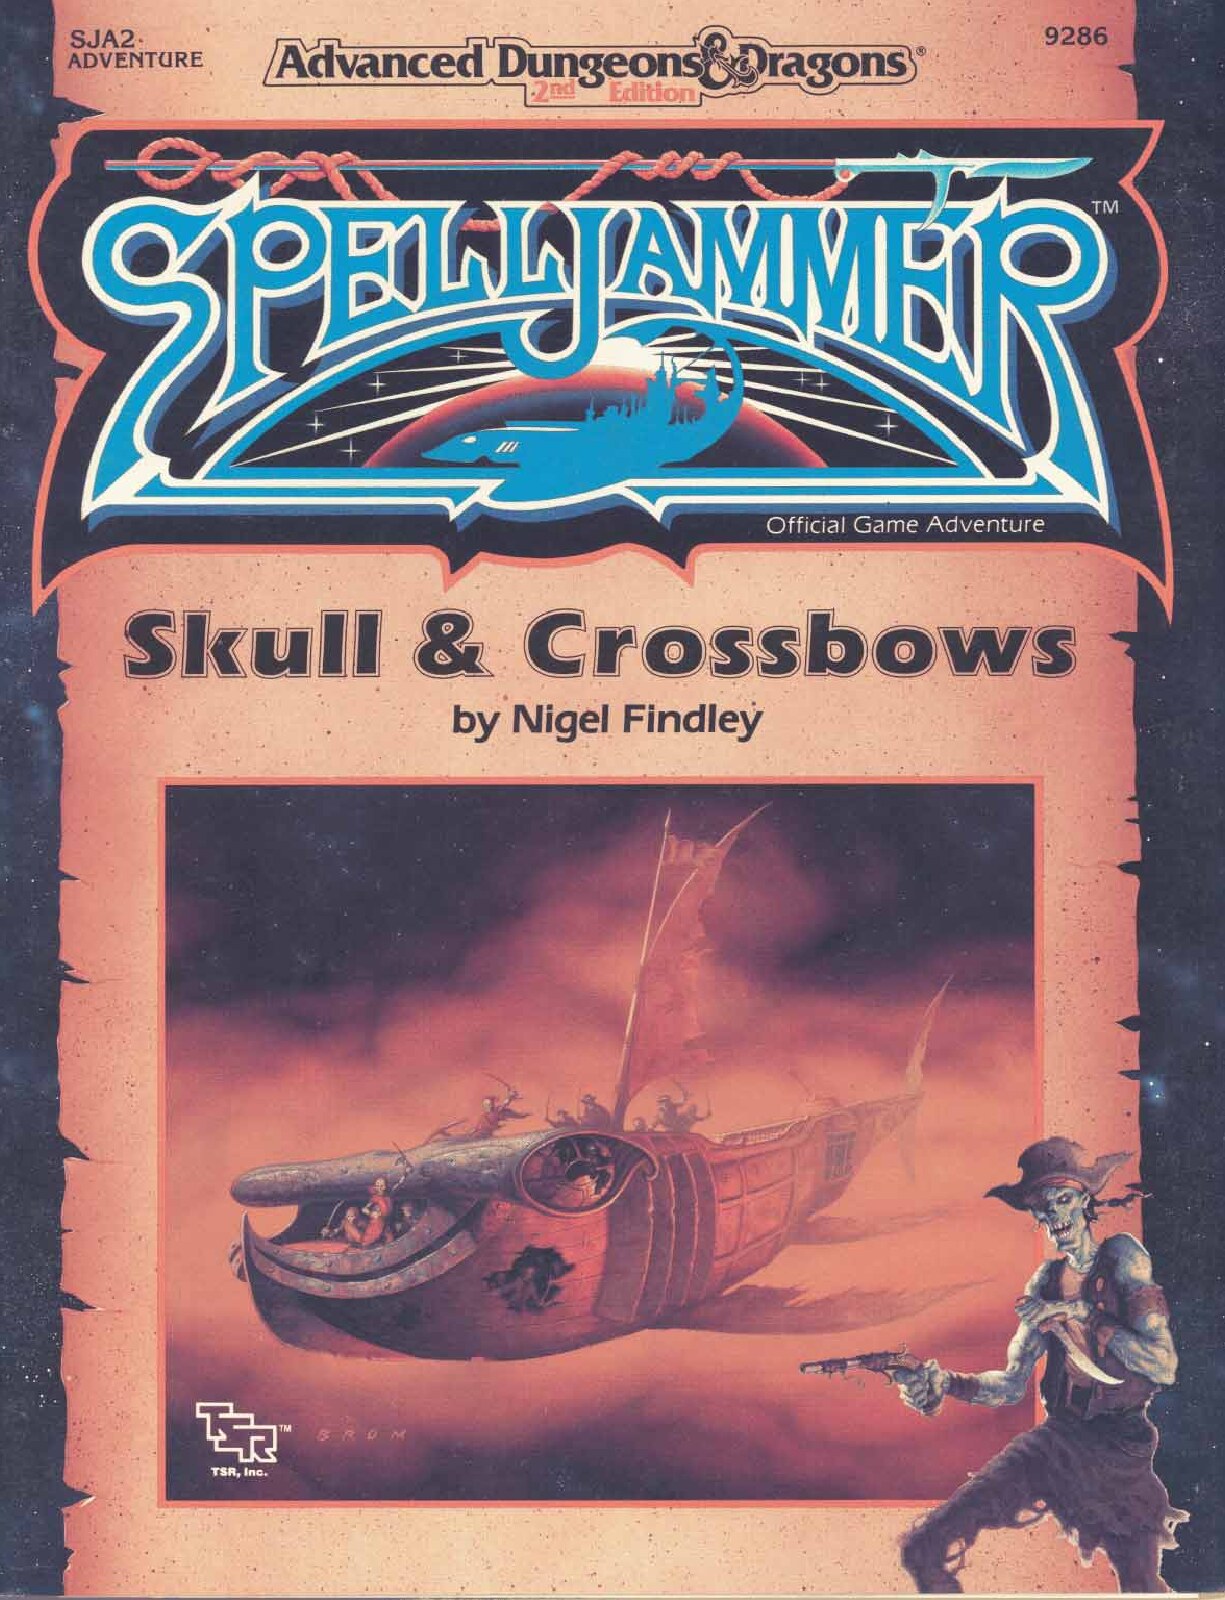 TSR 9286 SJA2 Skull & Crossbows